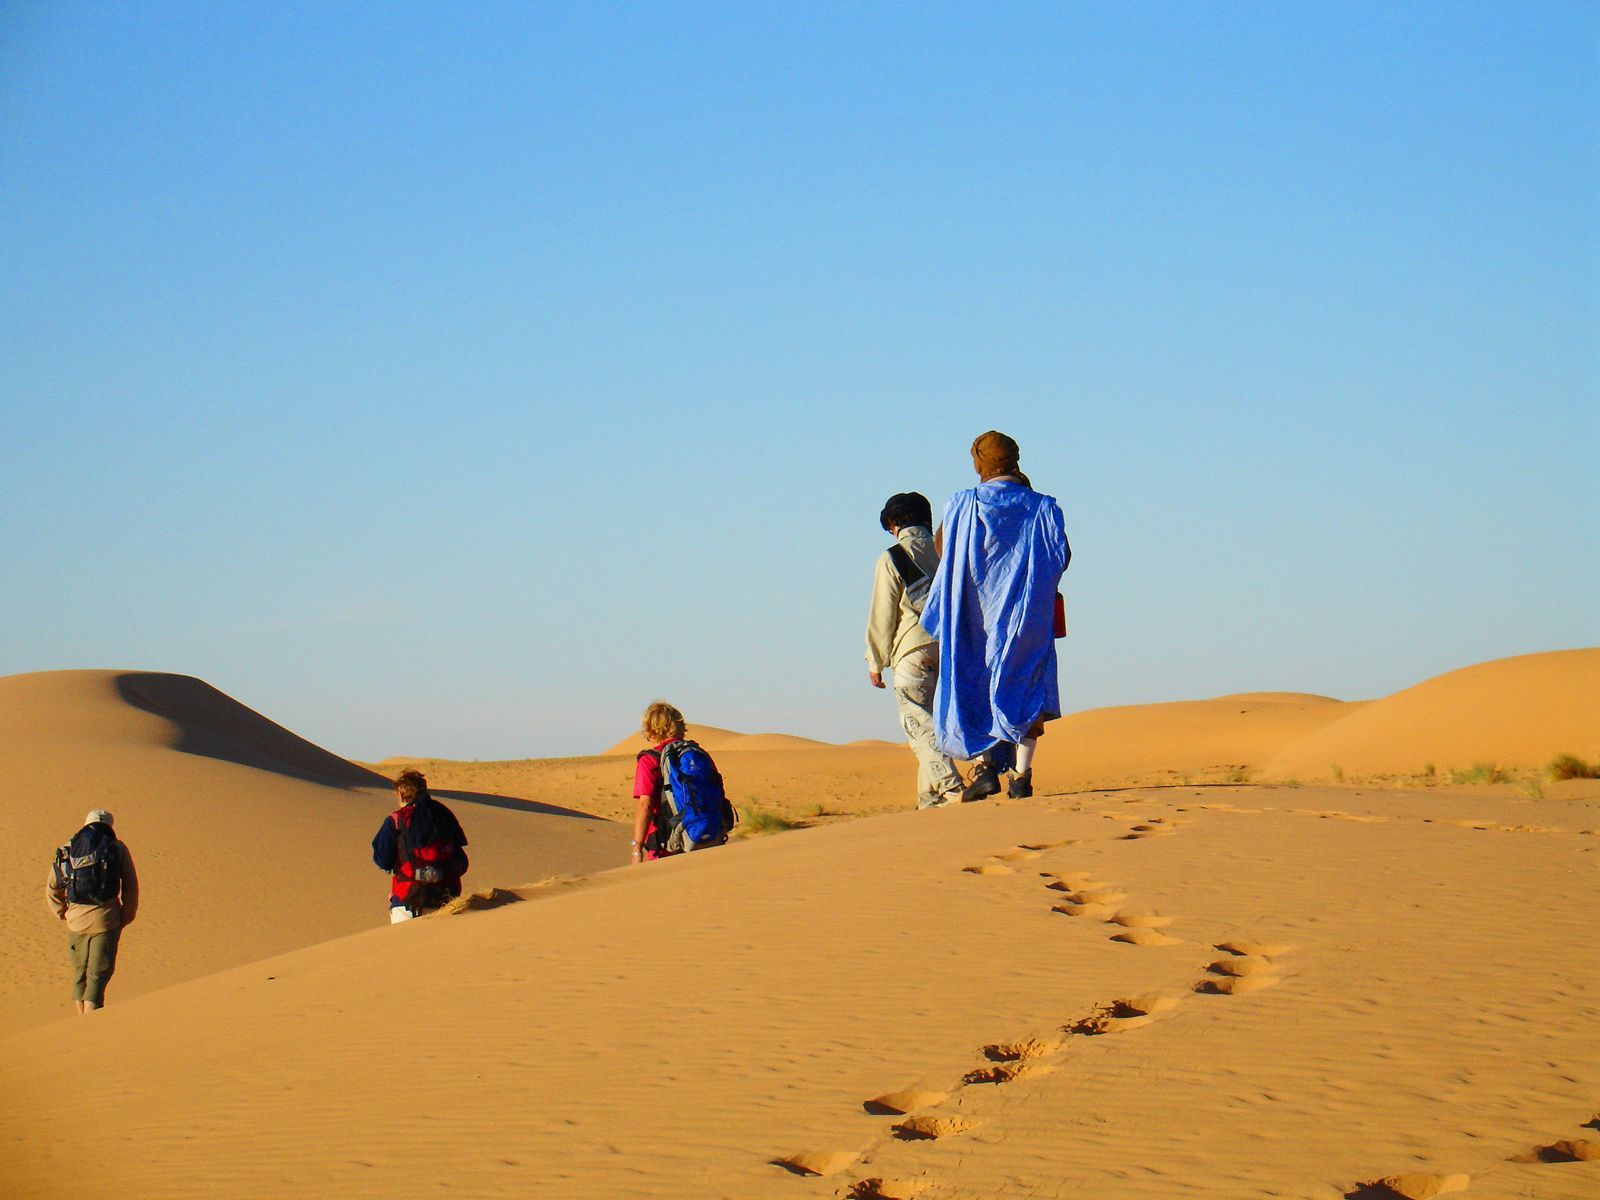 Trek en Mauritanie - Thierry M.